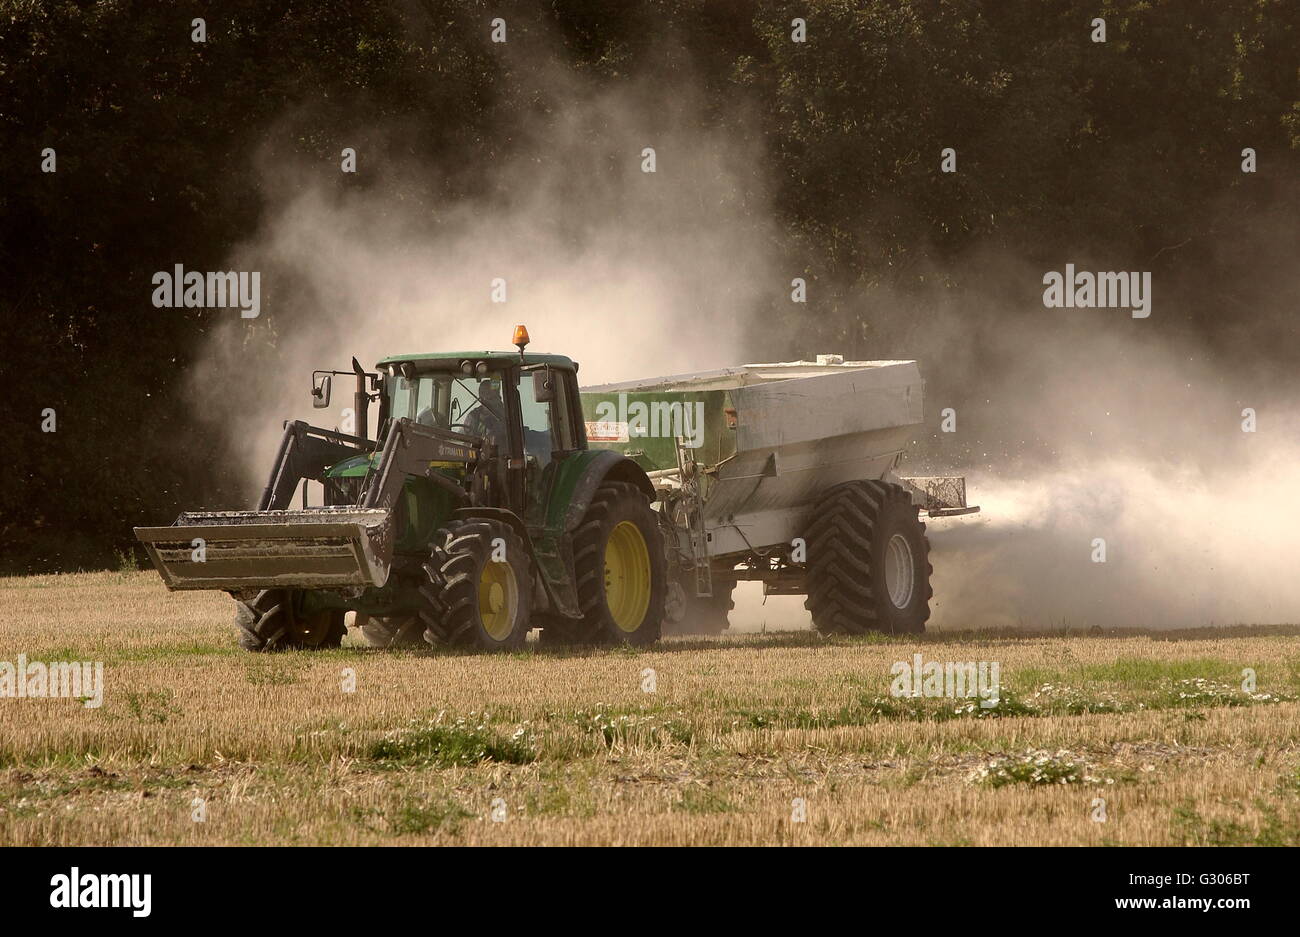 AJAXNETPHOTO - 2008. SOUTHAMPTON,Inghilterra. La diffusione di una nuvola di fertilizzante su un grano campo di stoppie. Foto:JONATHAN EASTLAND/AJAX REF:D1 80310 1414 Foto Stock